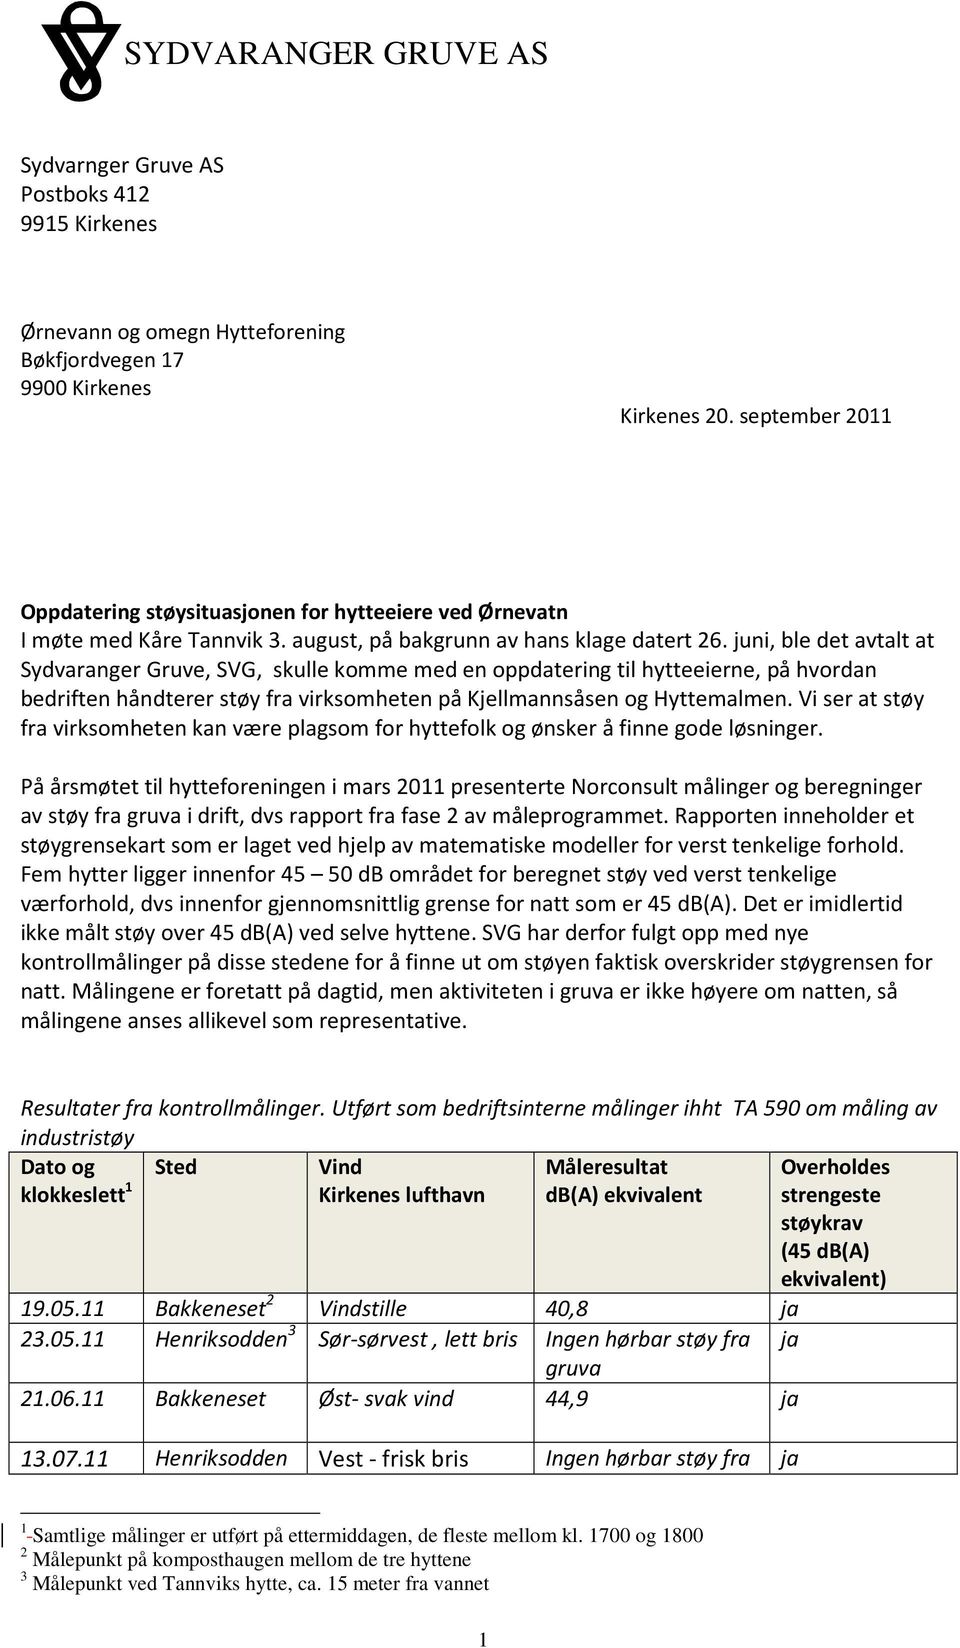 juni, ble det avtalt at Sydvaranger Gruve, SVG, skulle komme med en oppdatering til hytteeierne, på hvordan bedriften håndterer støy fra virksomheten på Kjellmannsåsen og Hyttemalmen.